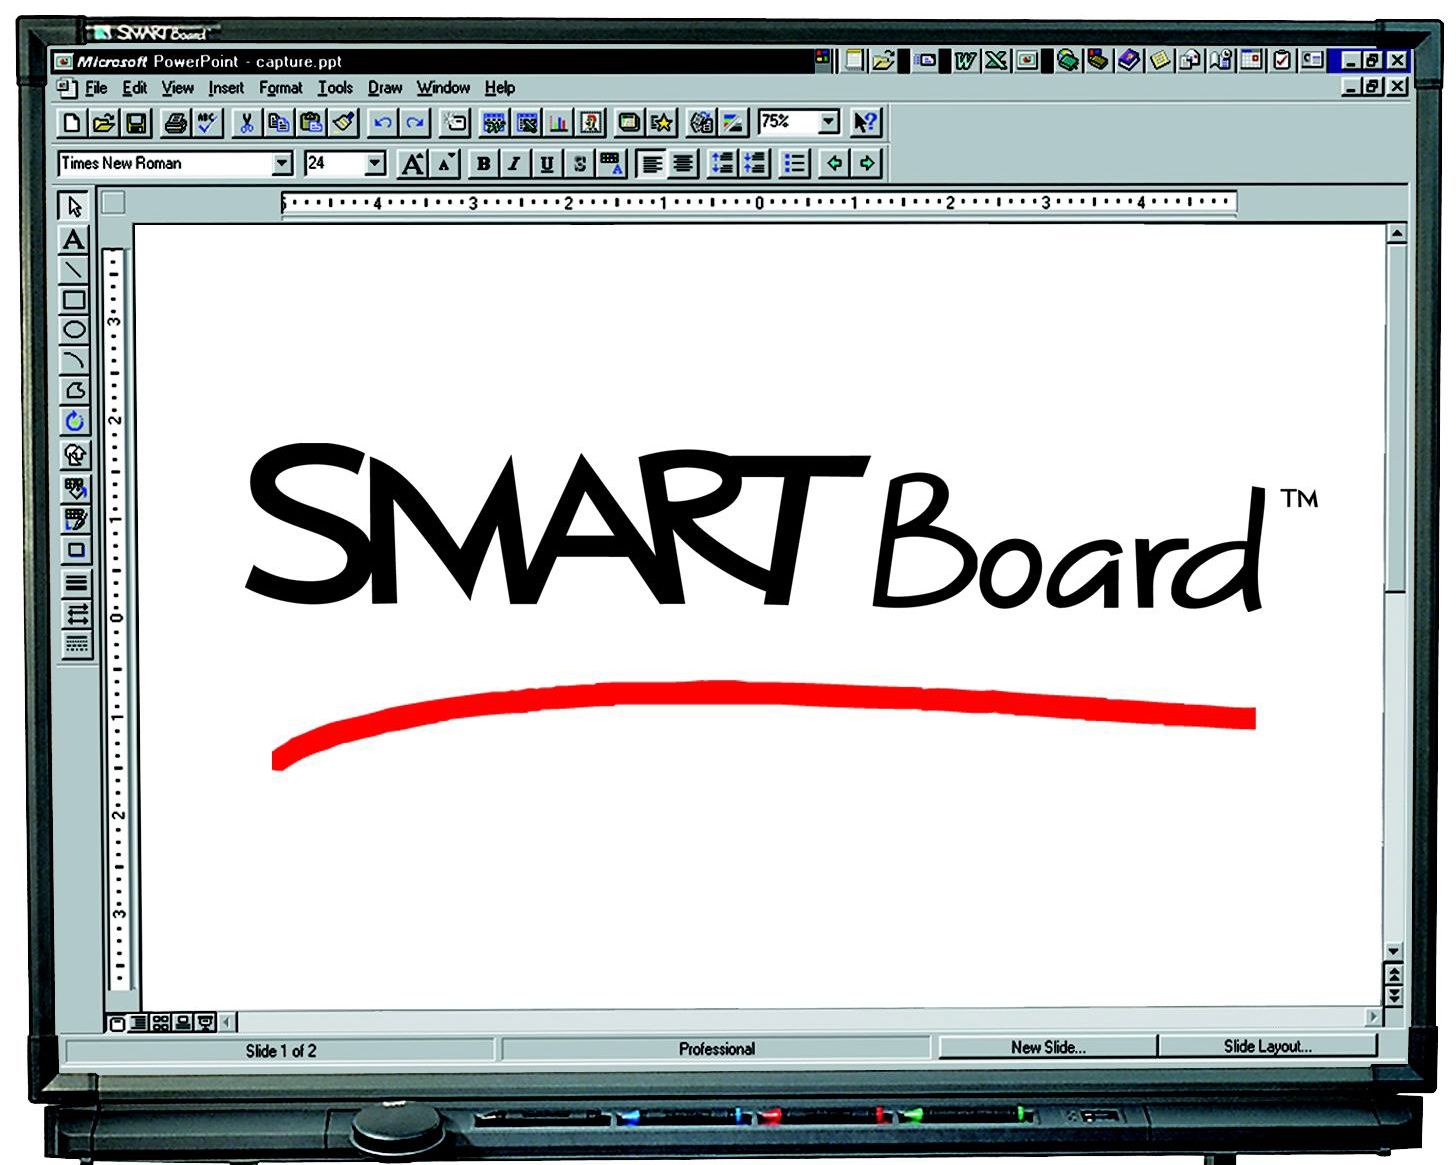 smartboard